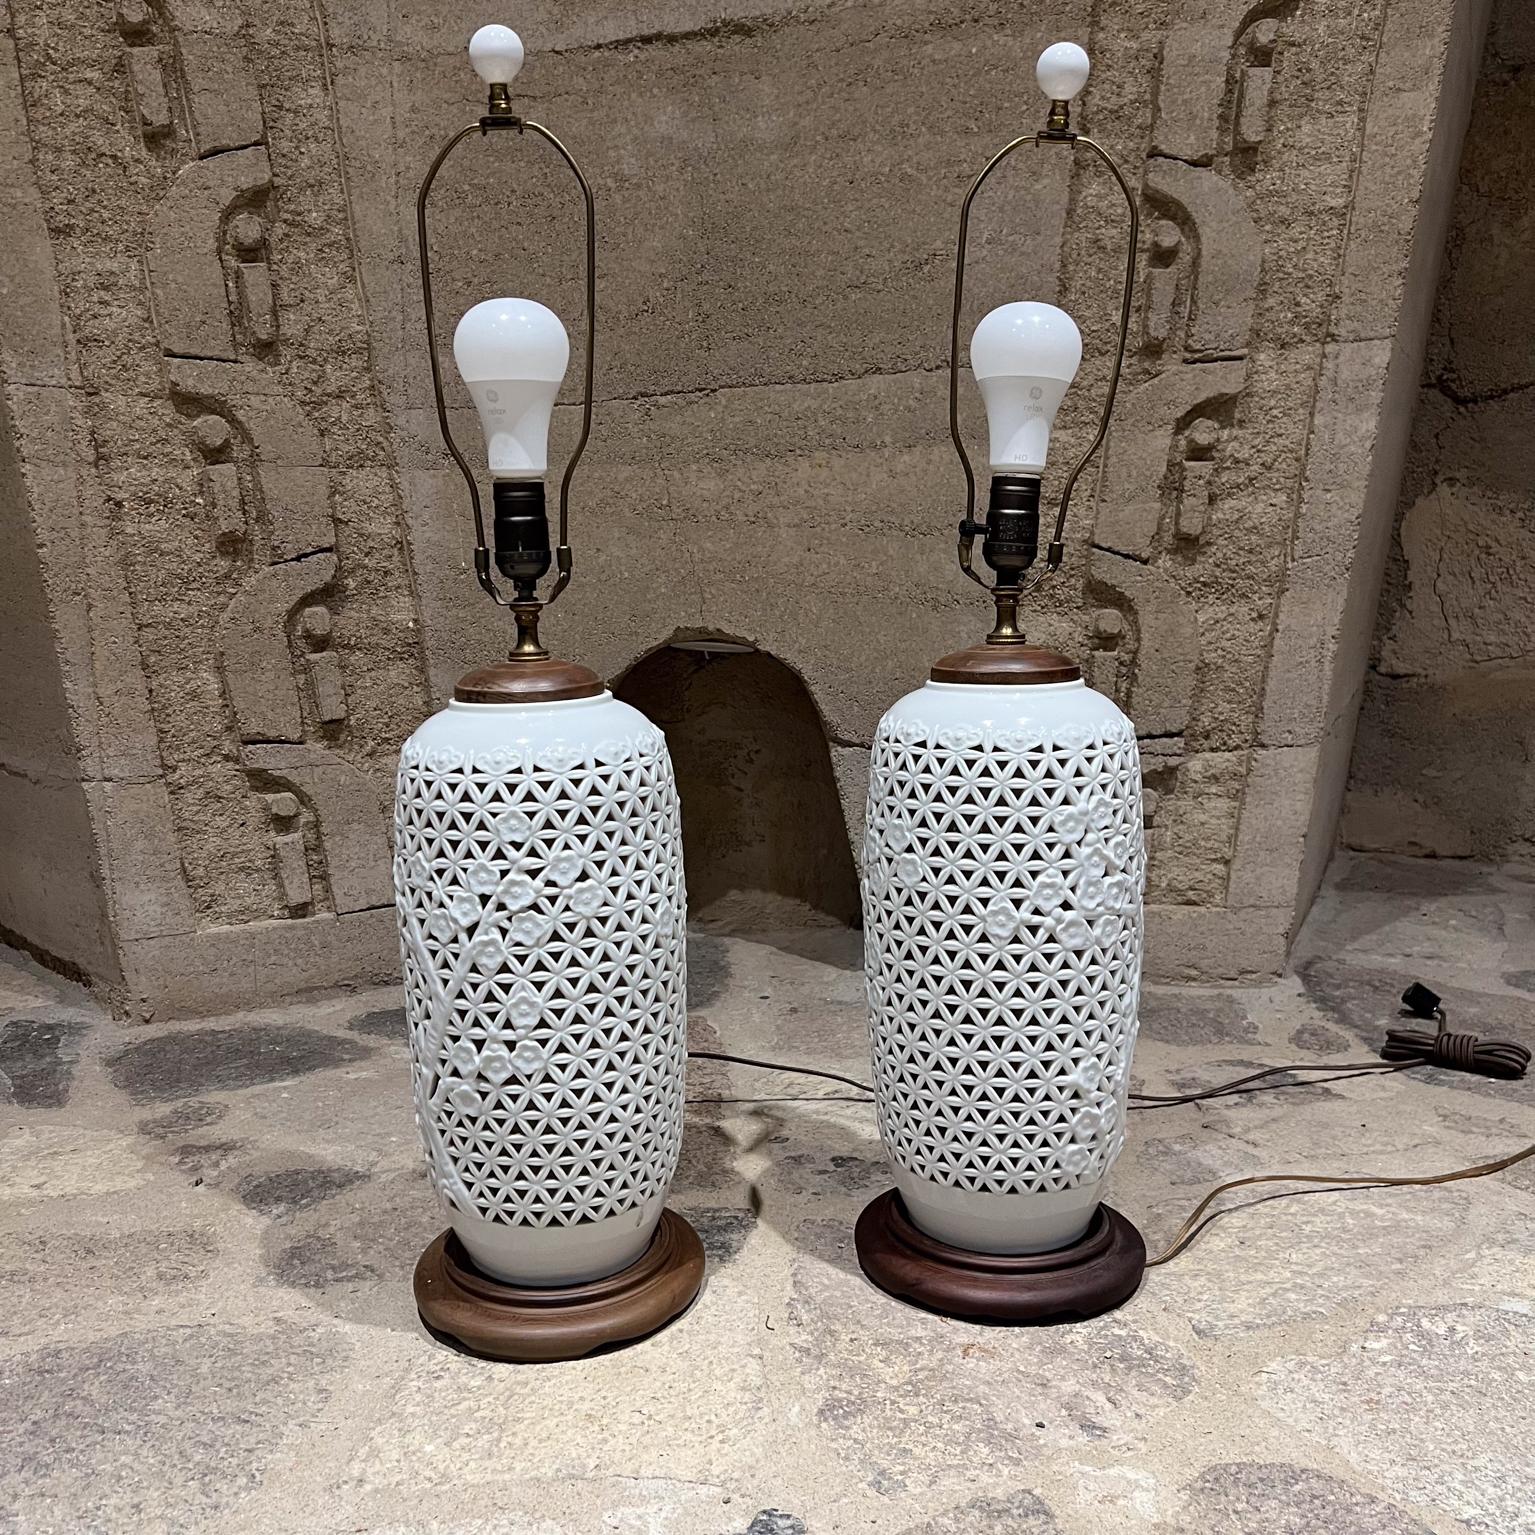 
1950er Jahre Paar Tischlampen Chinesisch blanc de chine
Durchbrochene Vase Lampen netzförmiges Porzellan.
3-Wege-Intensitätsschalter für Glühbirnen. Glühbirnen sind im Lieferumfang enthalten.
Es sind keine Schirme enthalten.
Sockel aus Holz.
31,5 h